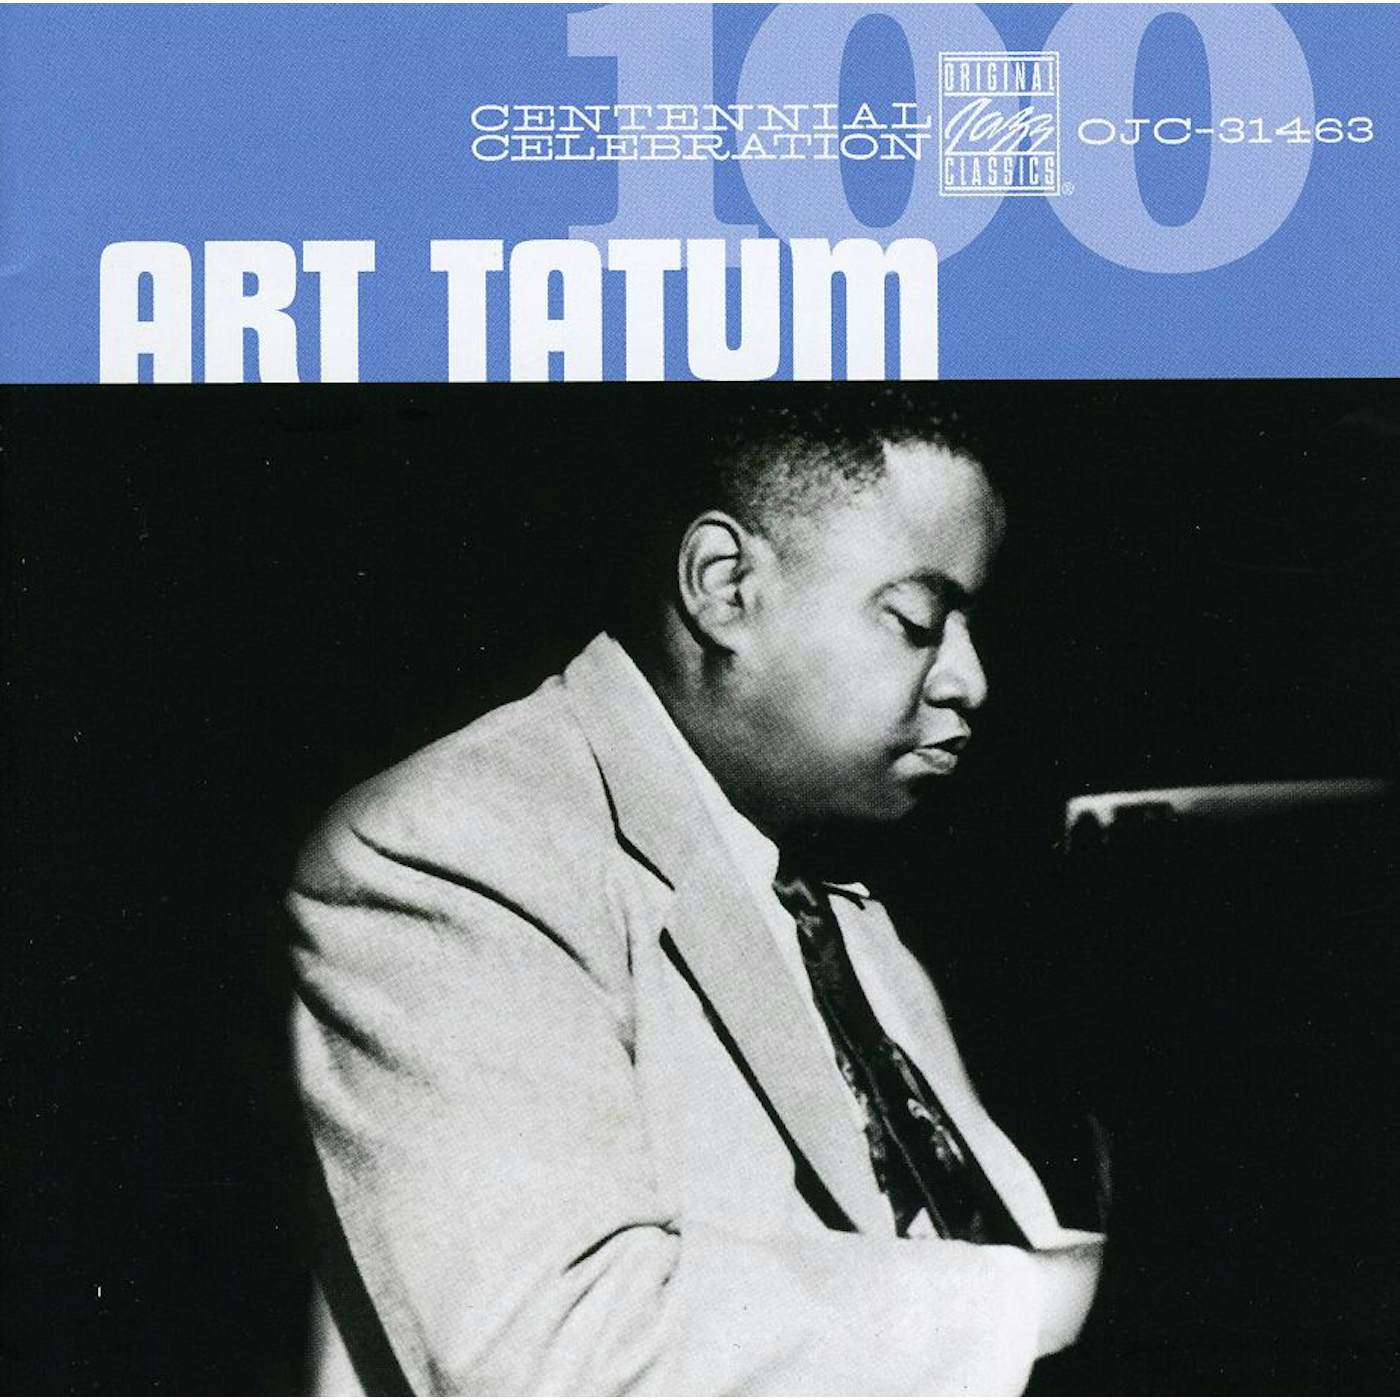 Art Tatum CENTENNIAL CELEBRATION CD